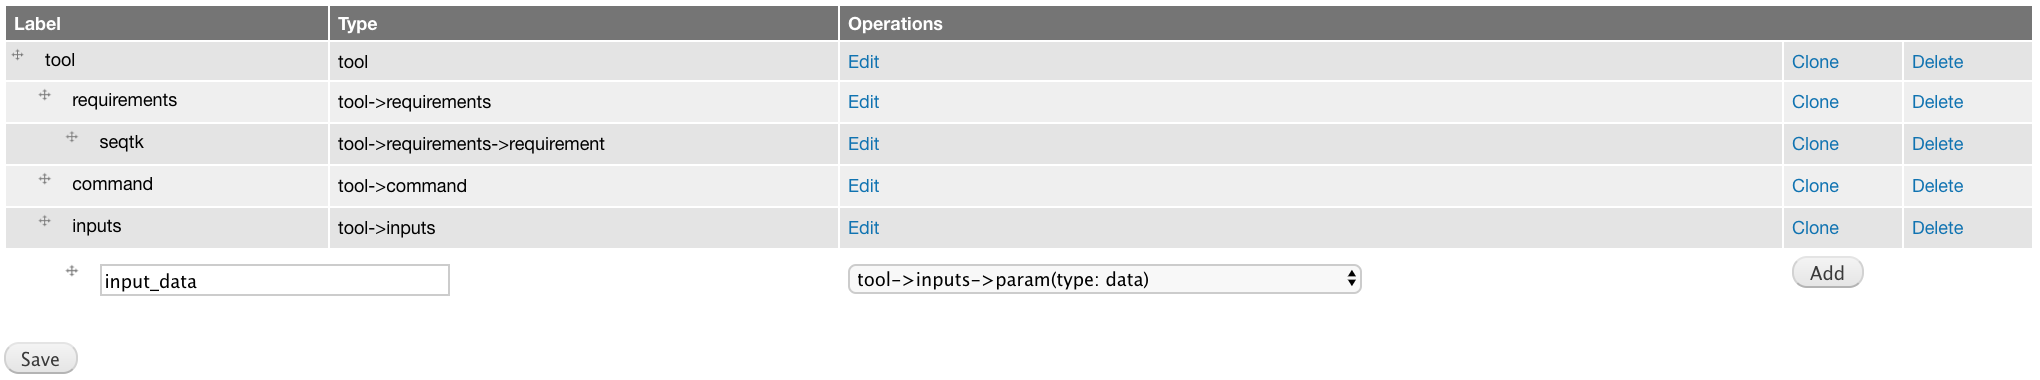 _images/tool_inputs_input_param_data.png